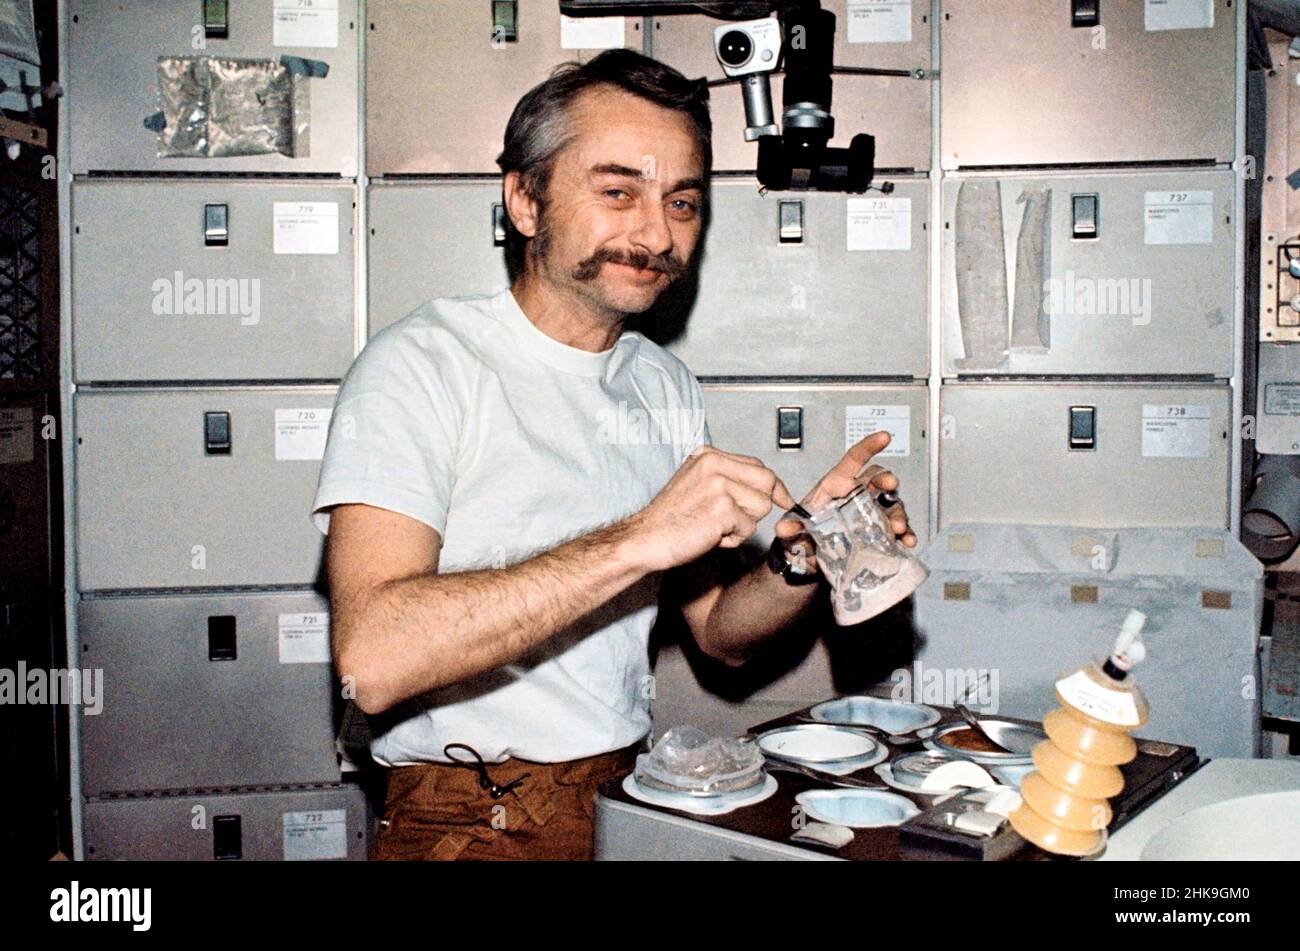 (6. August 1973) --- Wissenschaftler-Astronaut Owen K. Garriott, Wissenschaftspilot Skylab 3, rekonstituiert einen vorverpackten Behälter mit Lebensmitteln am Stationszimmertisch des Orbital Workshop (OWS) des Skylab Space Station Clusters. Dieses Bild wurde mit einer handgehaltenen Nikon-Kamera 35mm aufgenommen. Die Astronauten Garriott, Alan L. Bean und Jack R. Lousma blieben insgesamt 59 Tage lang bei der Skylab-Raumstation in der Erdumlaufbahn und führten zahlreiche medizinische, wissenschaftliche und technische Experimente durch. Beachten Sie das Messer und die Gabel auf dem Tablett und das Utensil, mit dem Garriott das mit Wasser vermischte Essen rührt Stockfoto